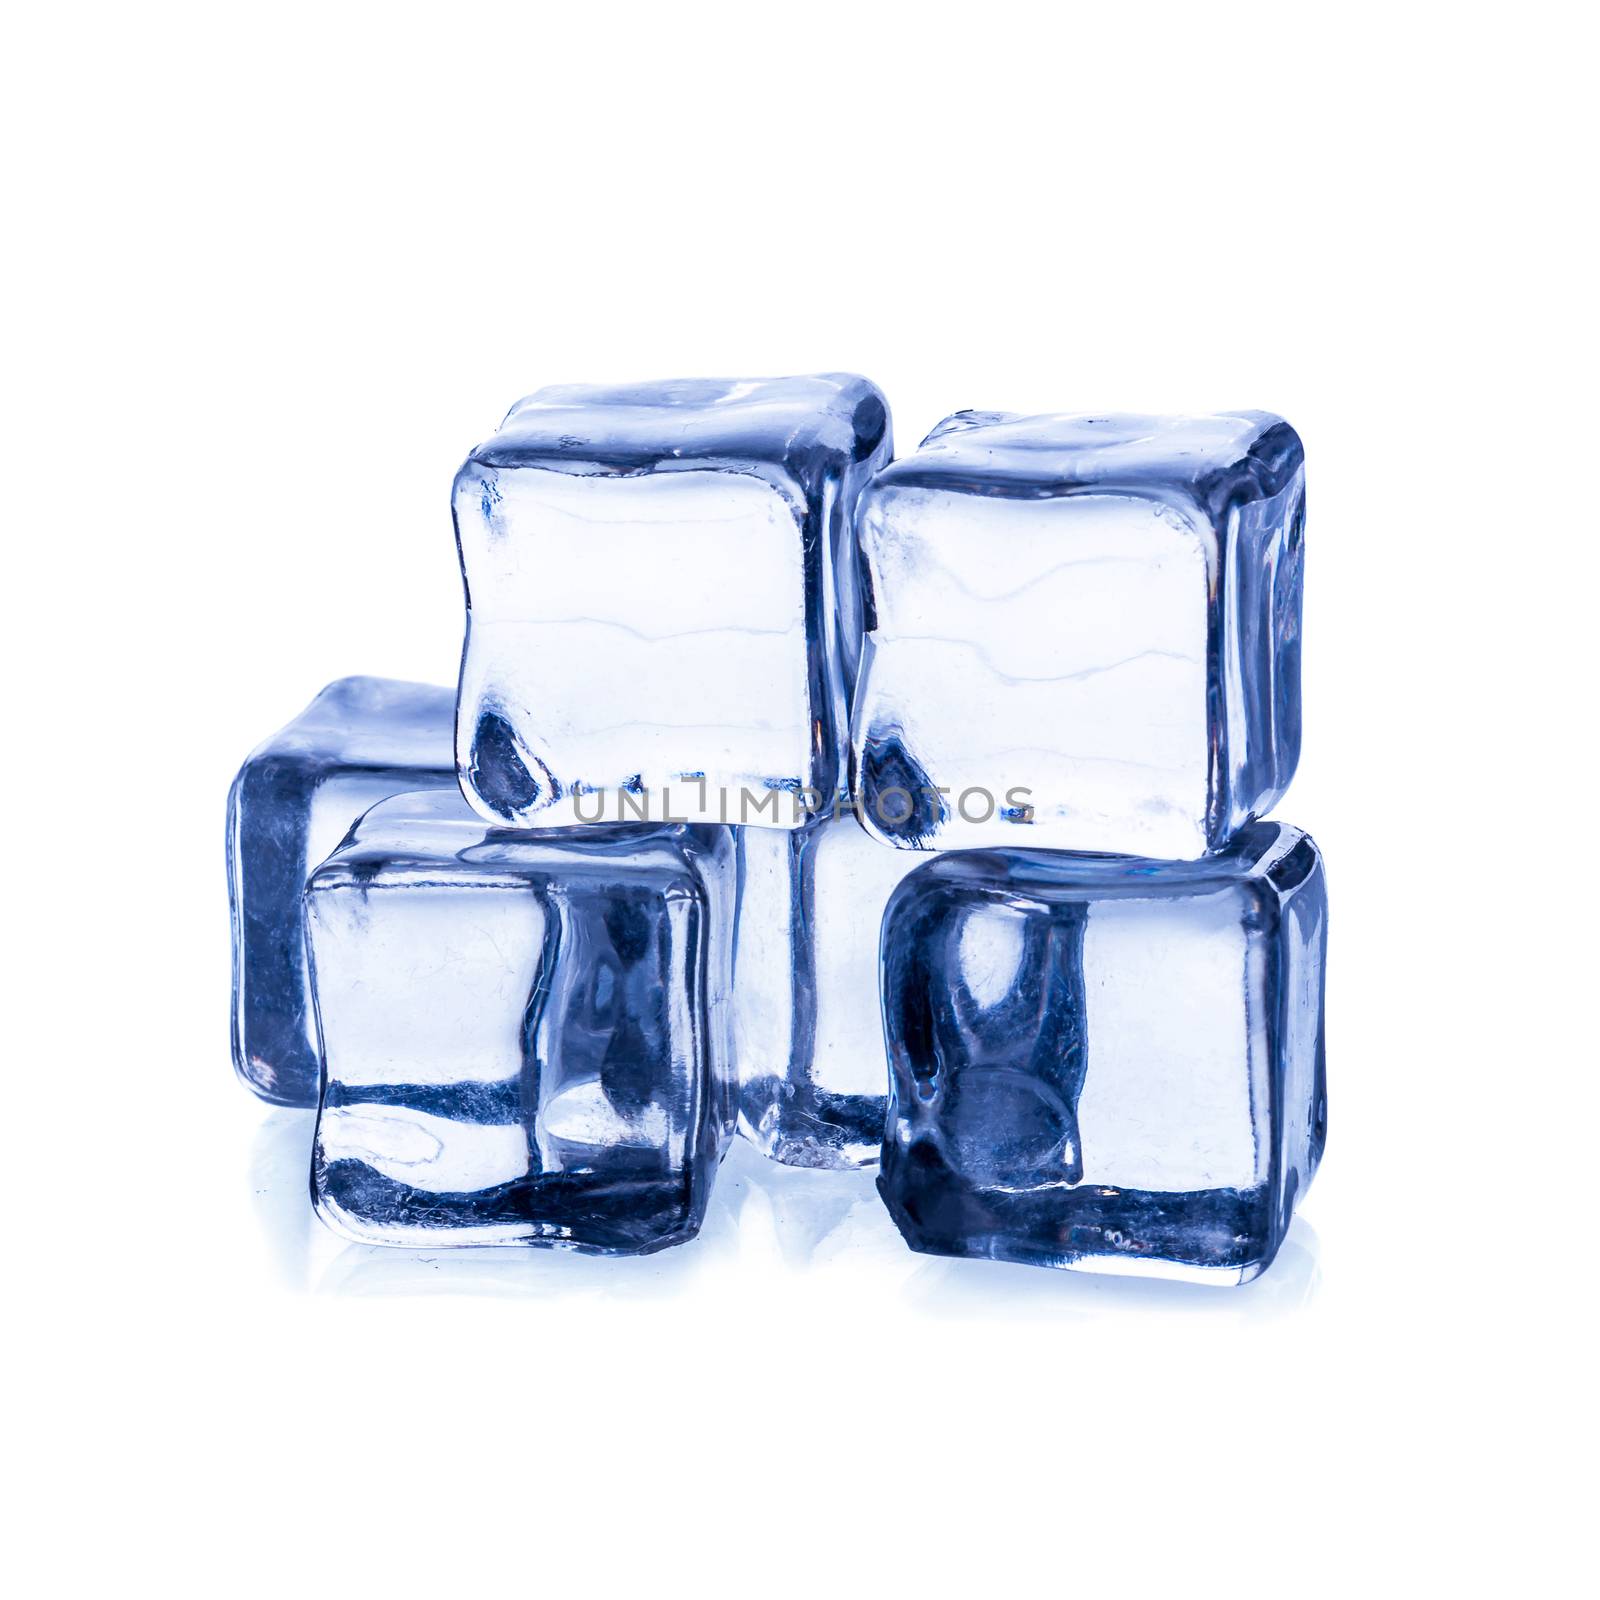 Melting ice cubes isolated on white background